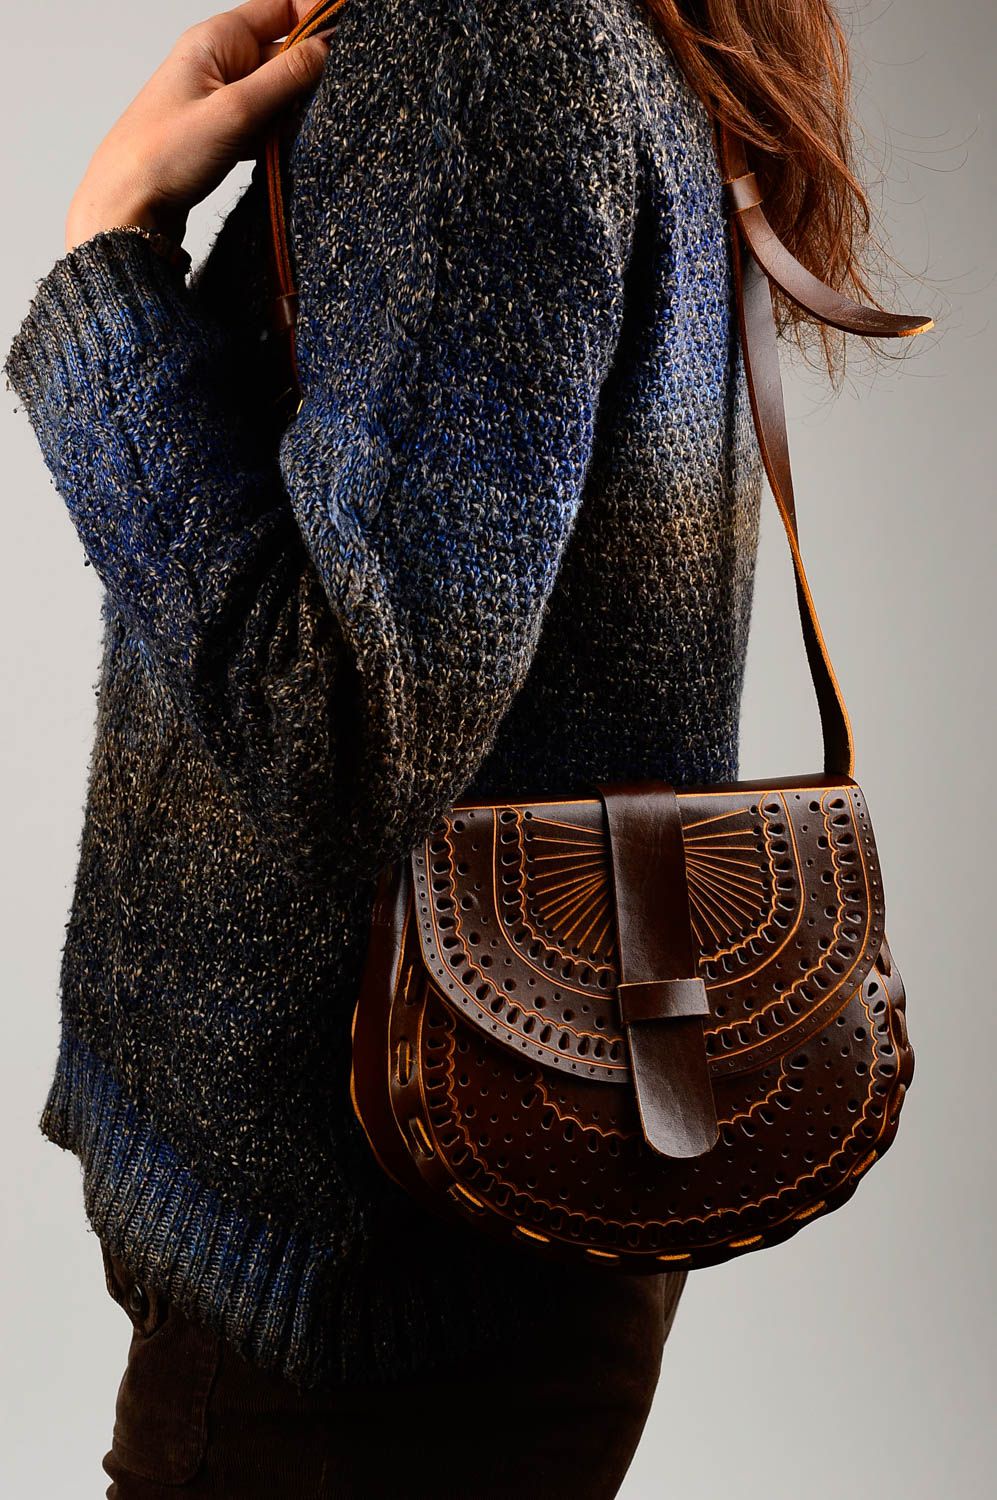 Сумка ручной работы сумка на плечо красивая кожаная сумка авторская стильная фото 1